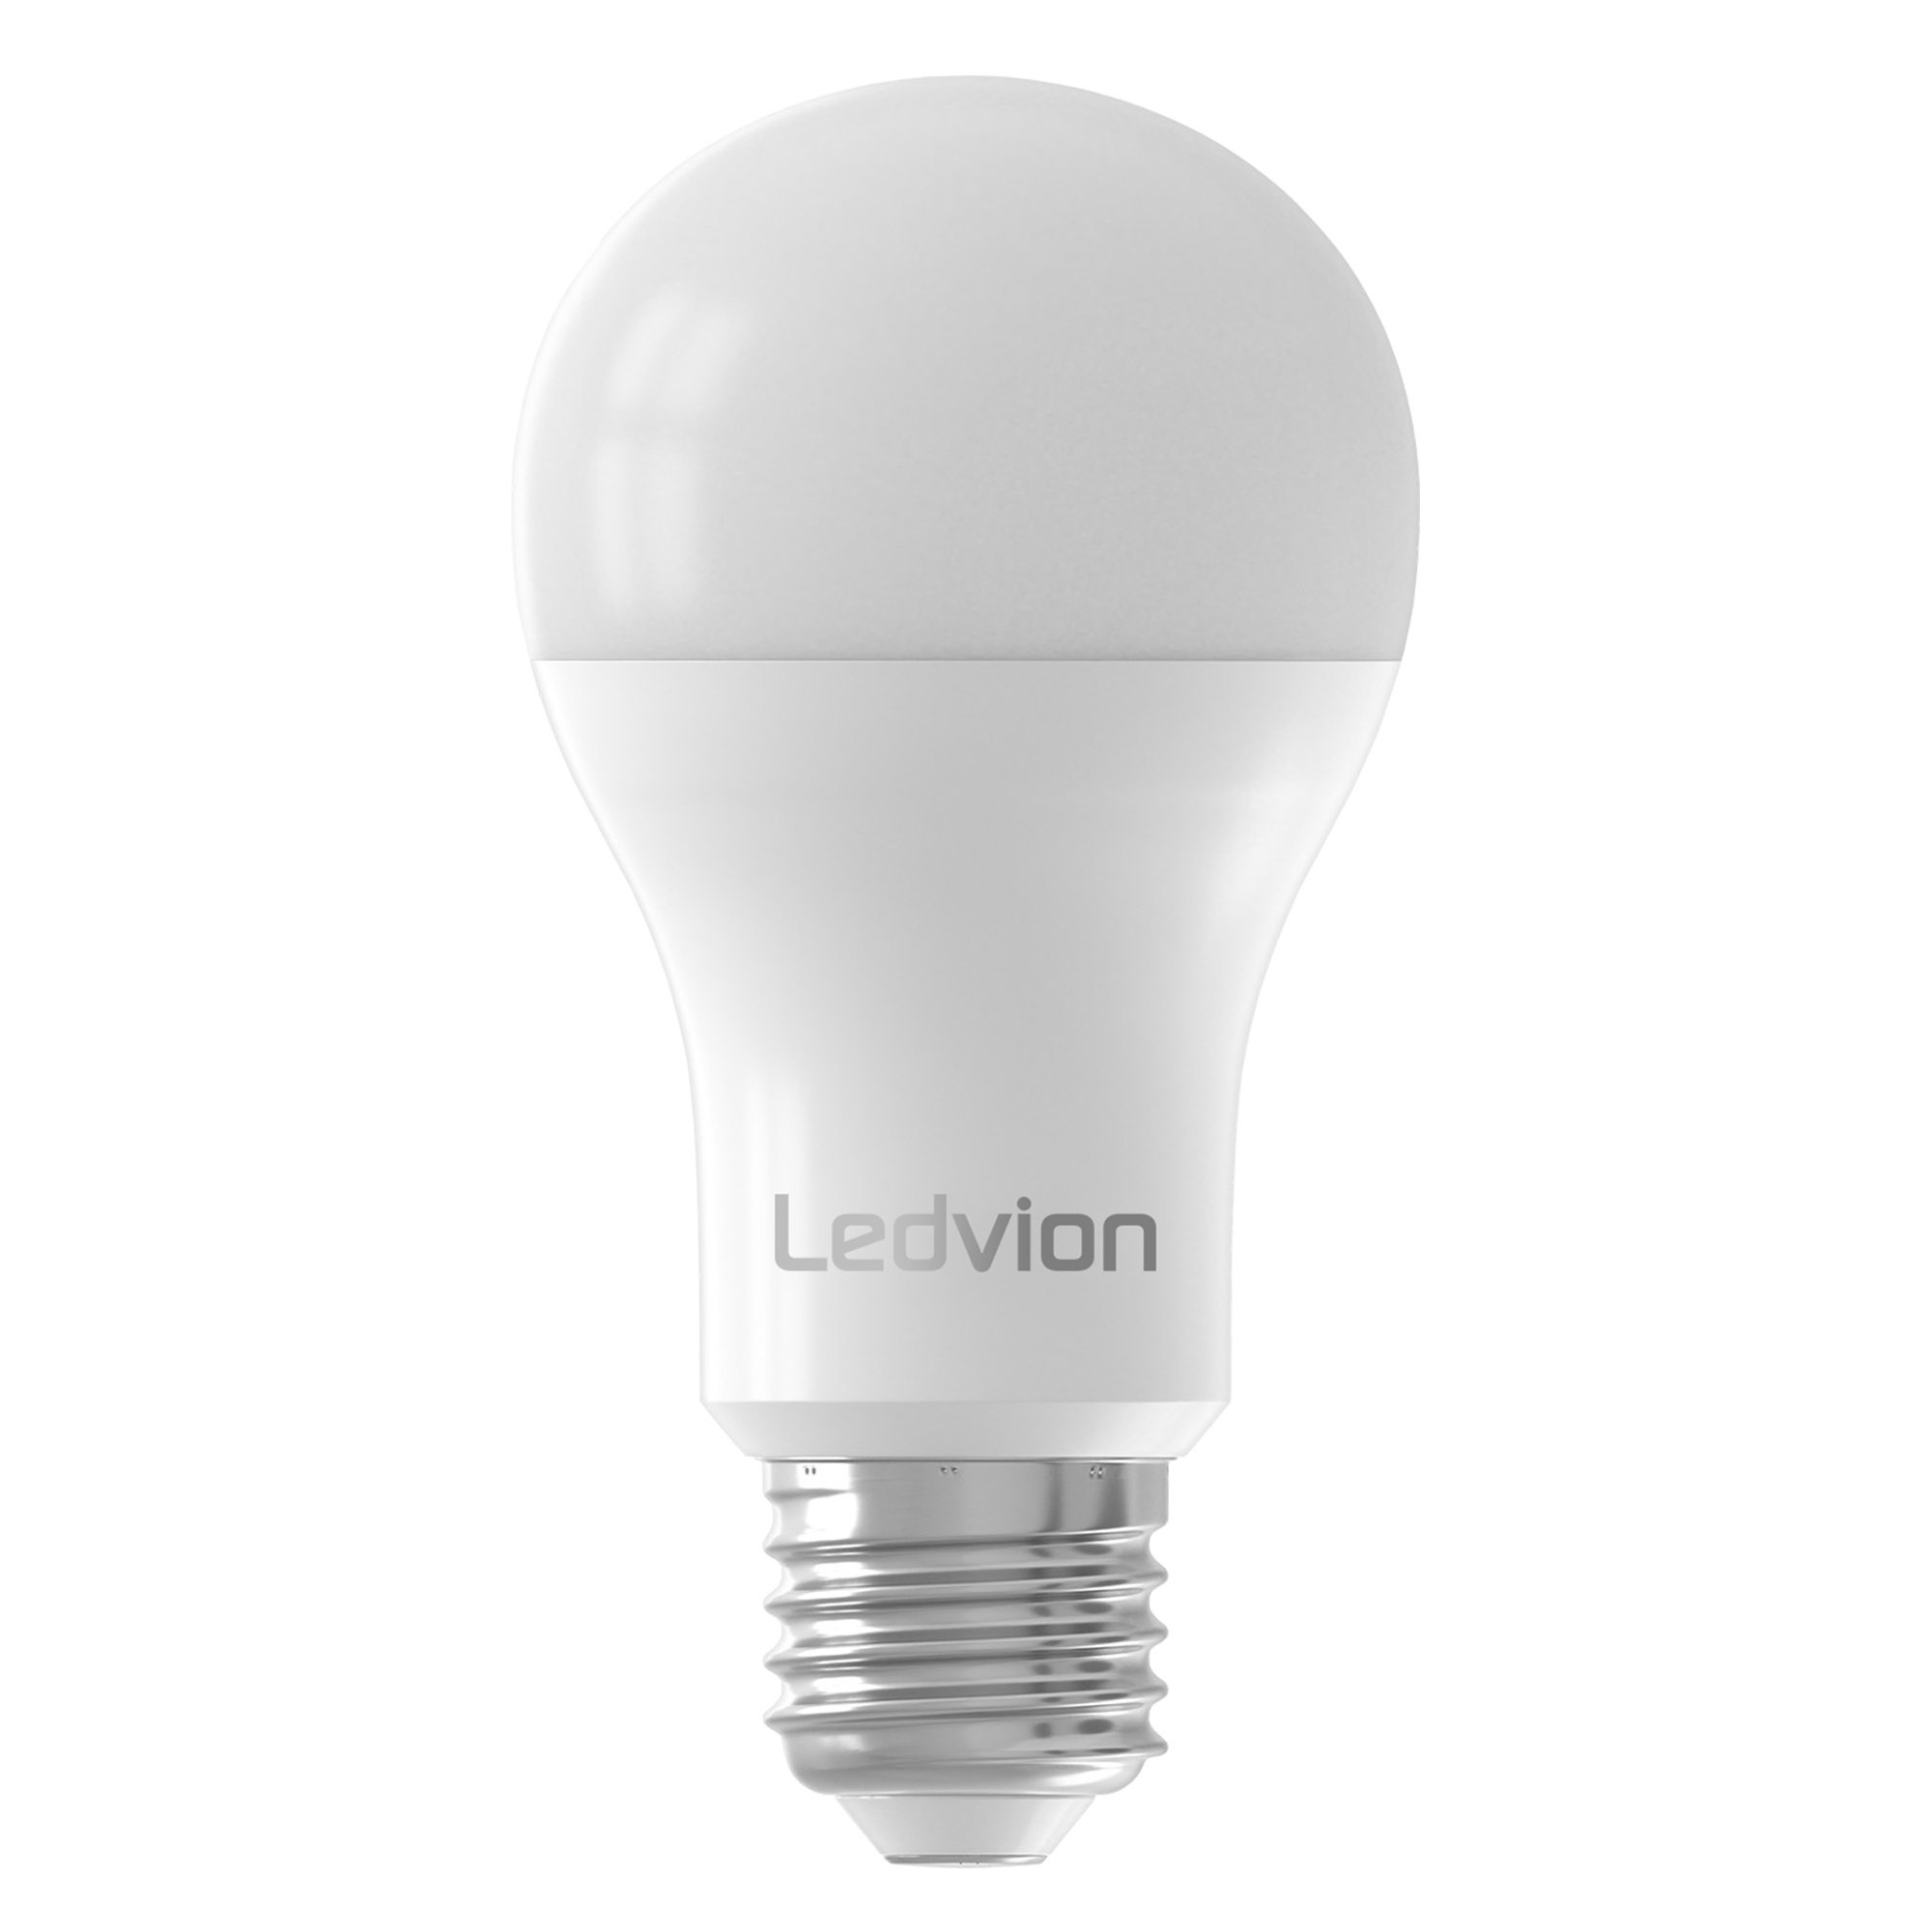 Klooster zonnebloem Het spijt me Ledvion Dimbare E27 LED Lamp - 8.8W - 6500K - 806 Lumen - Lightexpert.nl